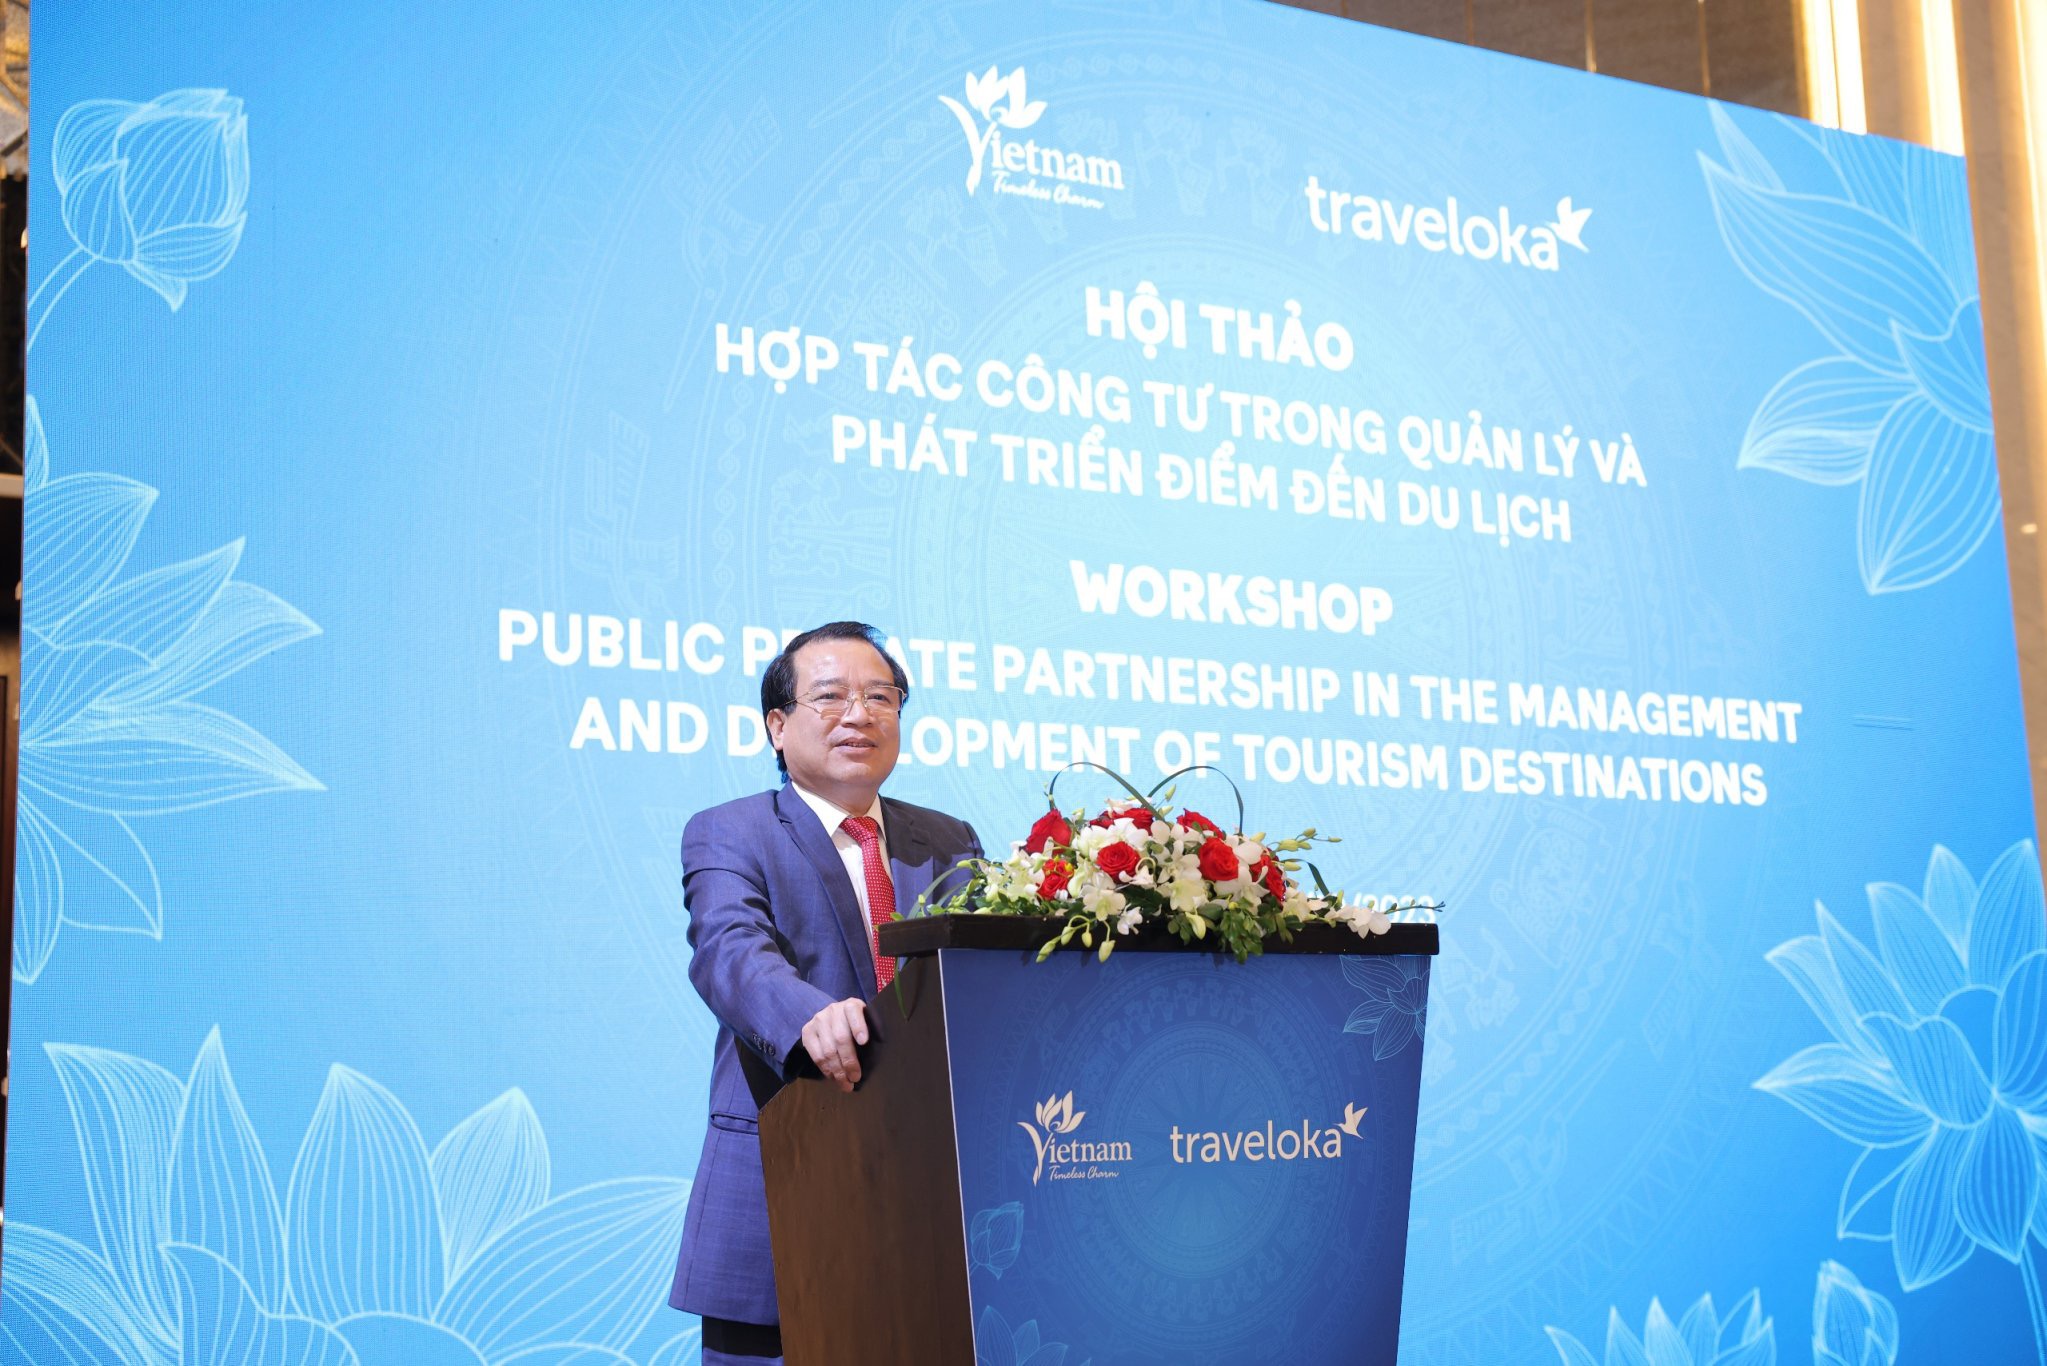 TS. Hà Văn Siêu, Phó Cục trưởng Cục Du lịch Quốc gia Việt Nam phát biểu tại Hội thảo “Hợp tác công-tư trong quản lý và phát triển điểm đến du lịch”